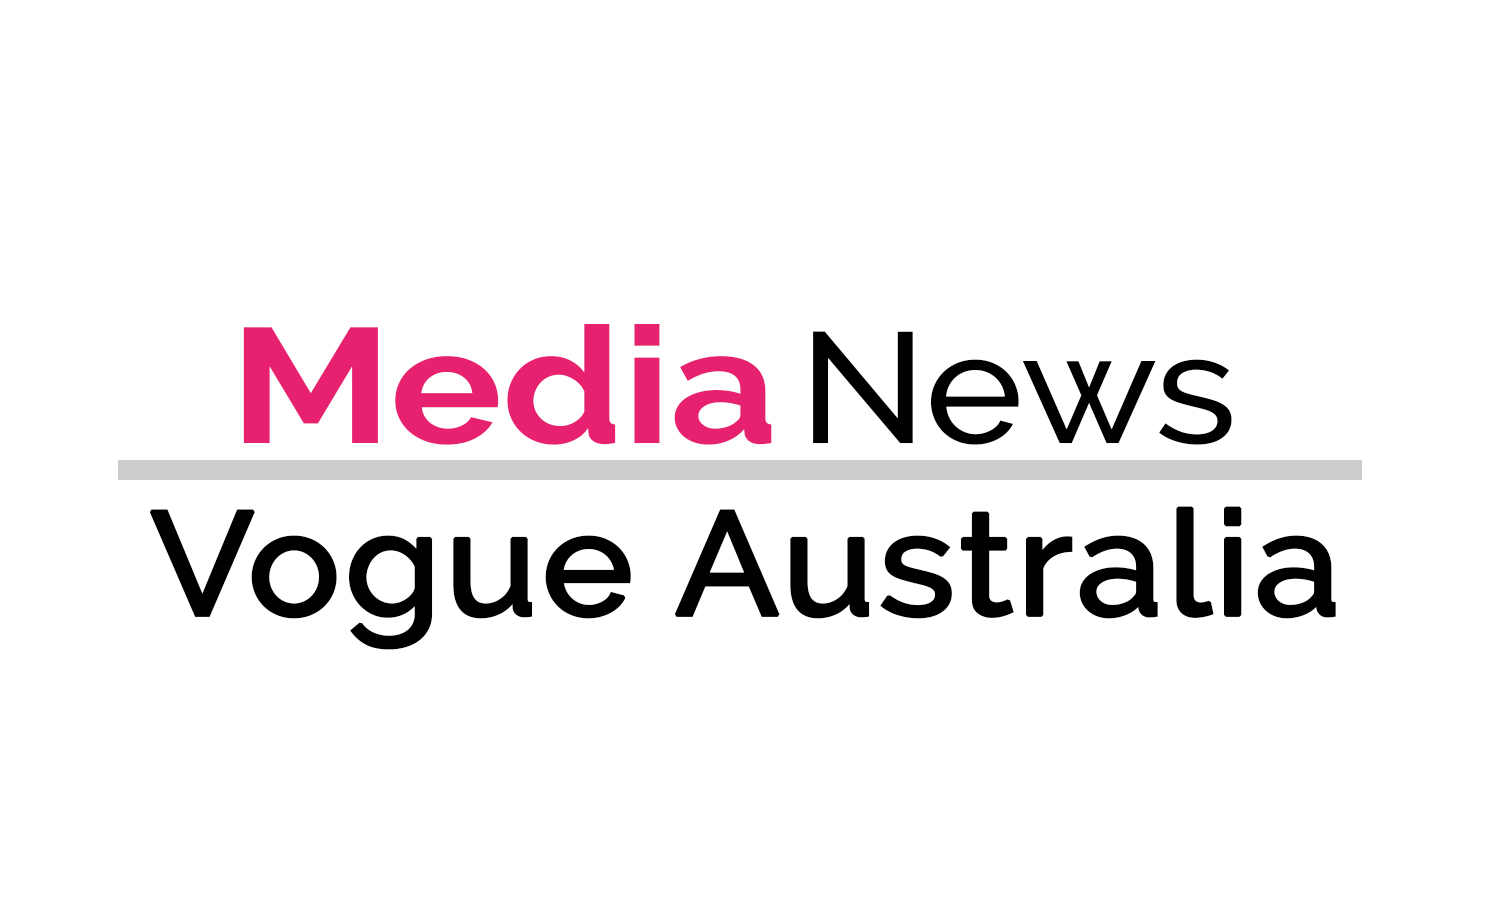 Vogue Australia market editor update